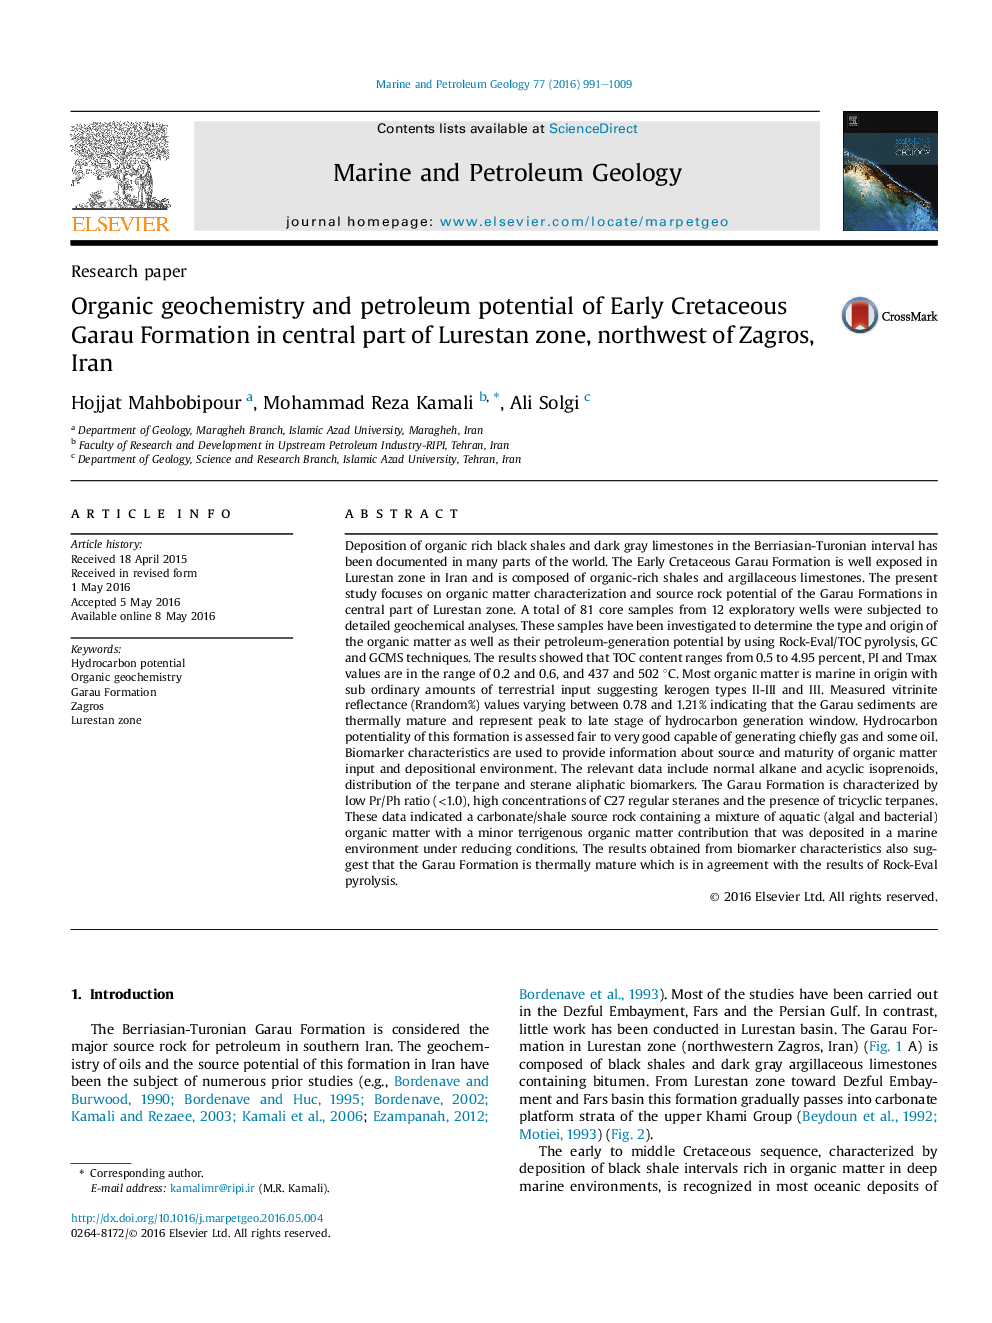 ژئوشیمی آلی و پتانسیل نفتی سازند گارو زودرس کرتاسه در بخش مرکزی منطقه لورستان، شمال غربی زاگرس، ایران 